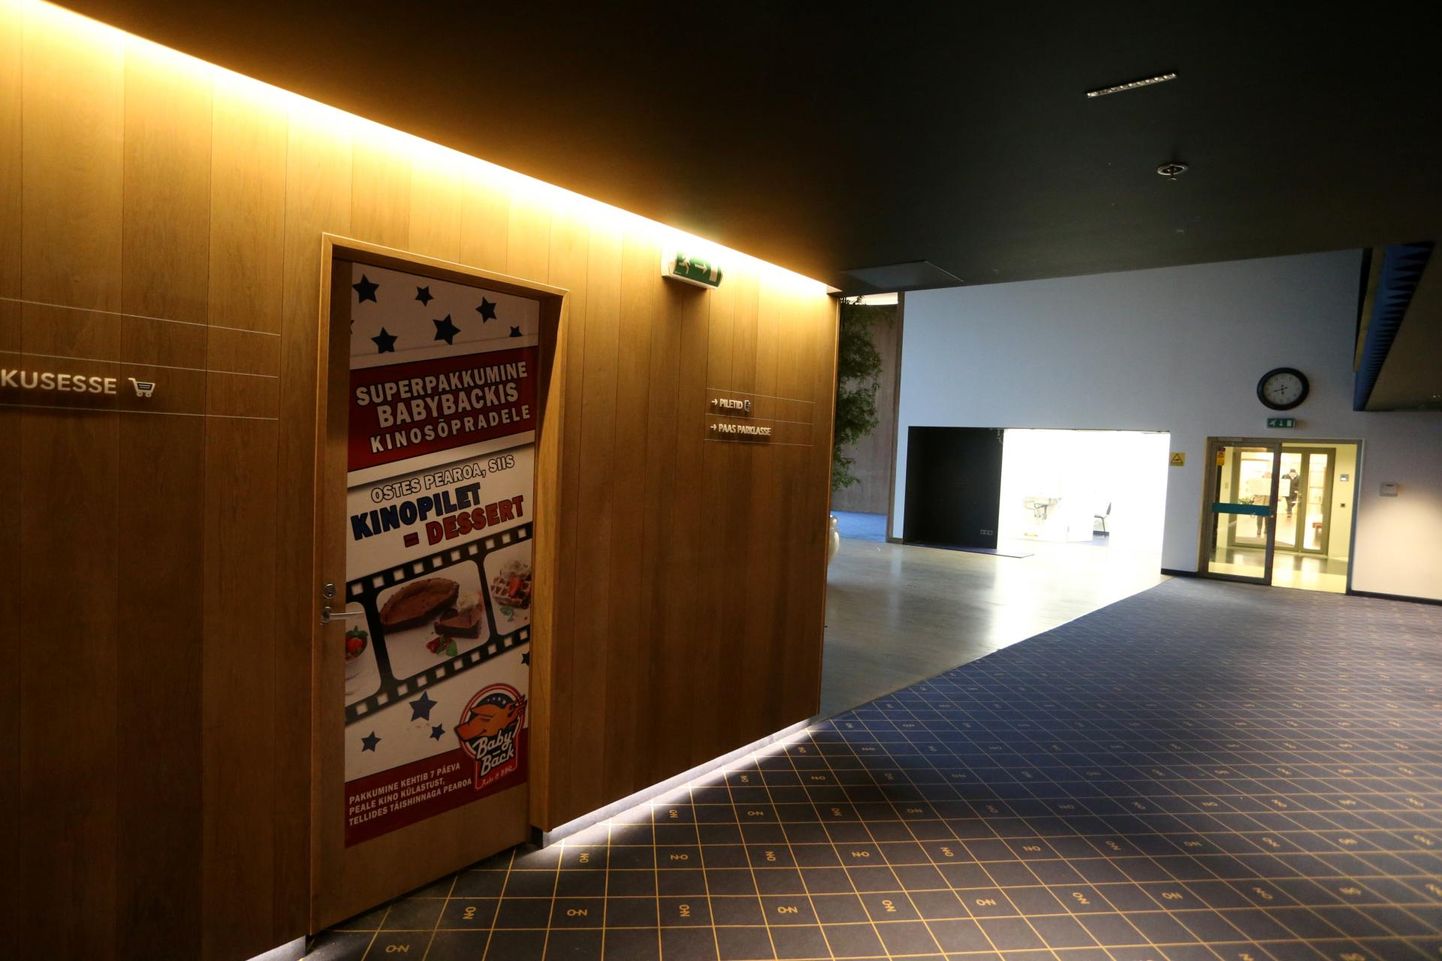 Cinamonist tühjaks jäänud viis kinosaali on kasutuseta seisnud juba alates 2020. aasta septembrist.